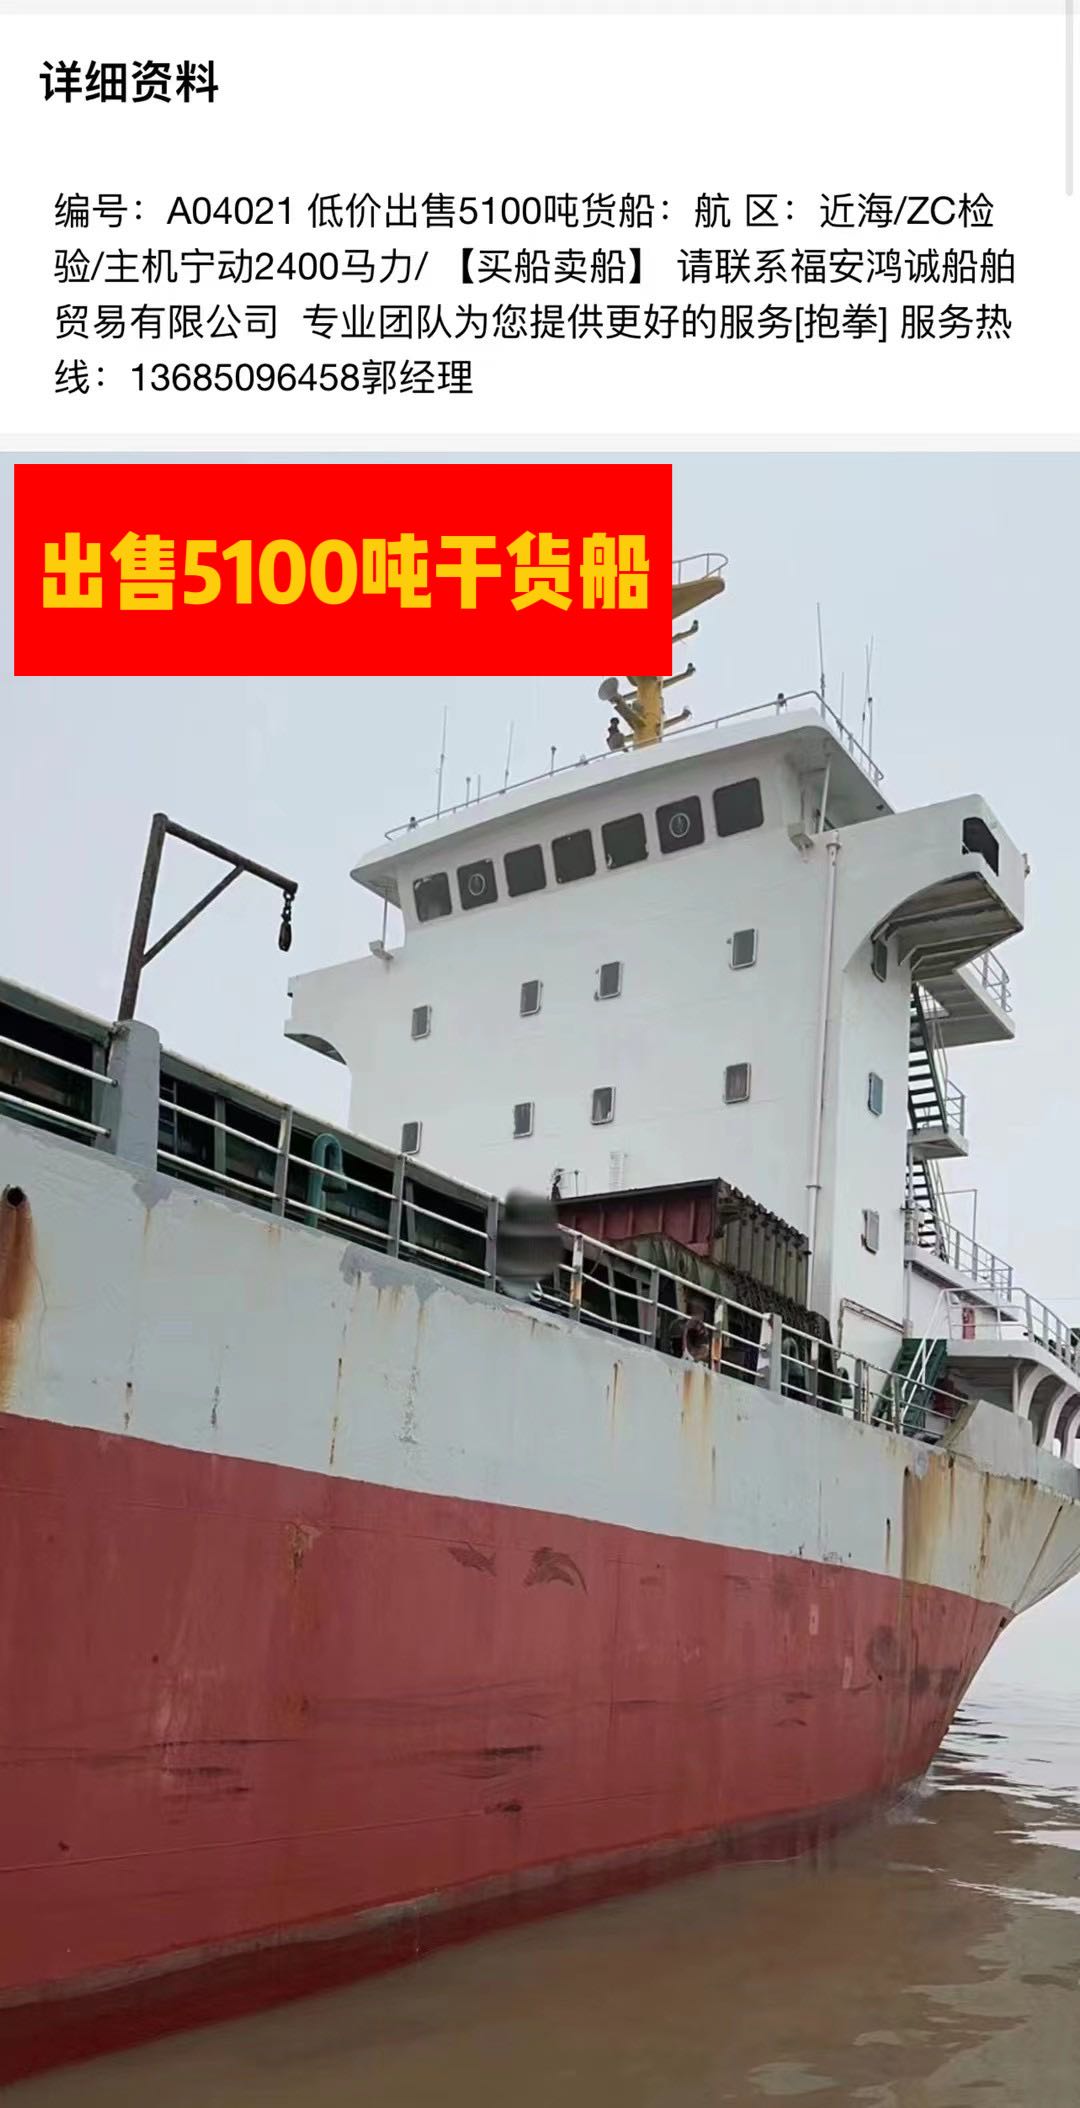 低价出售04年5100吨干货船